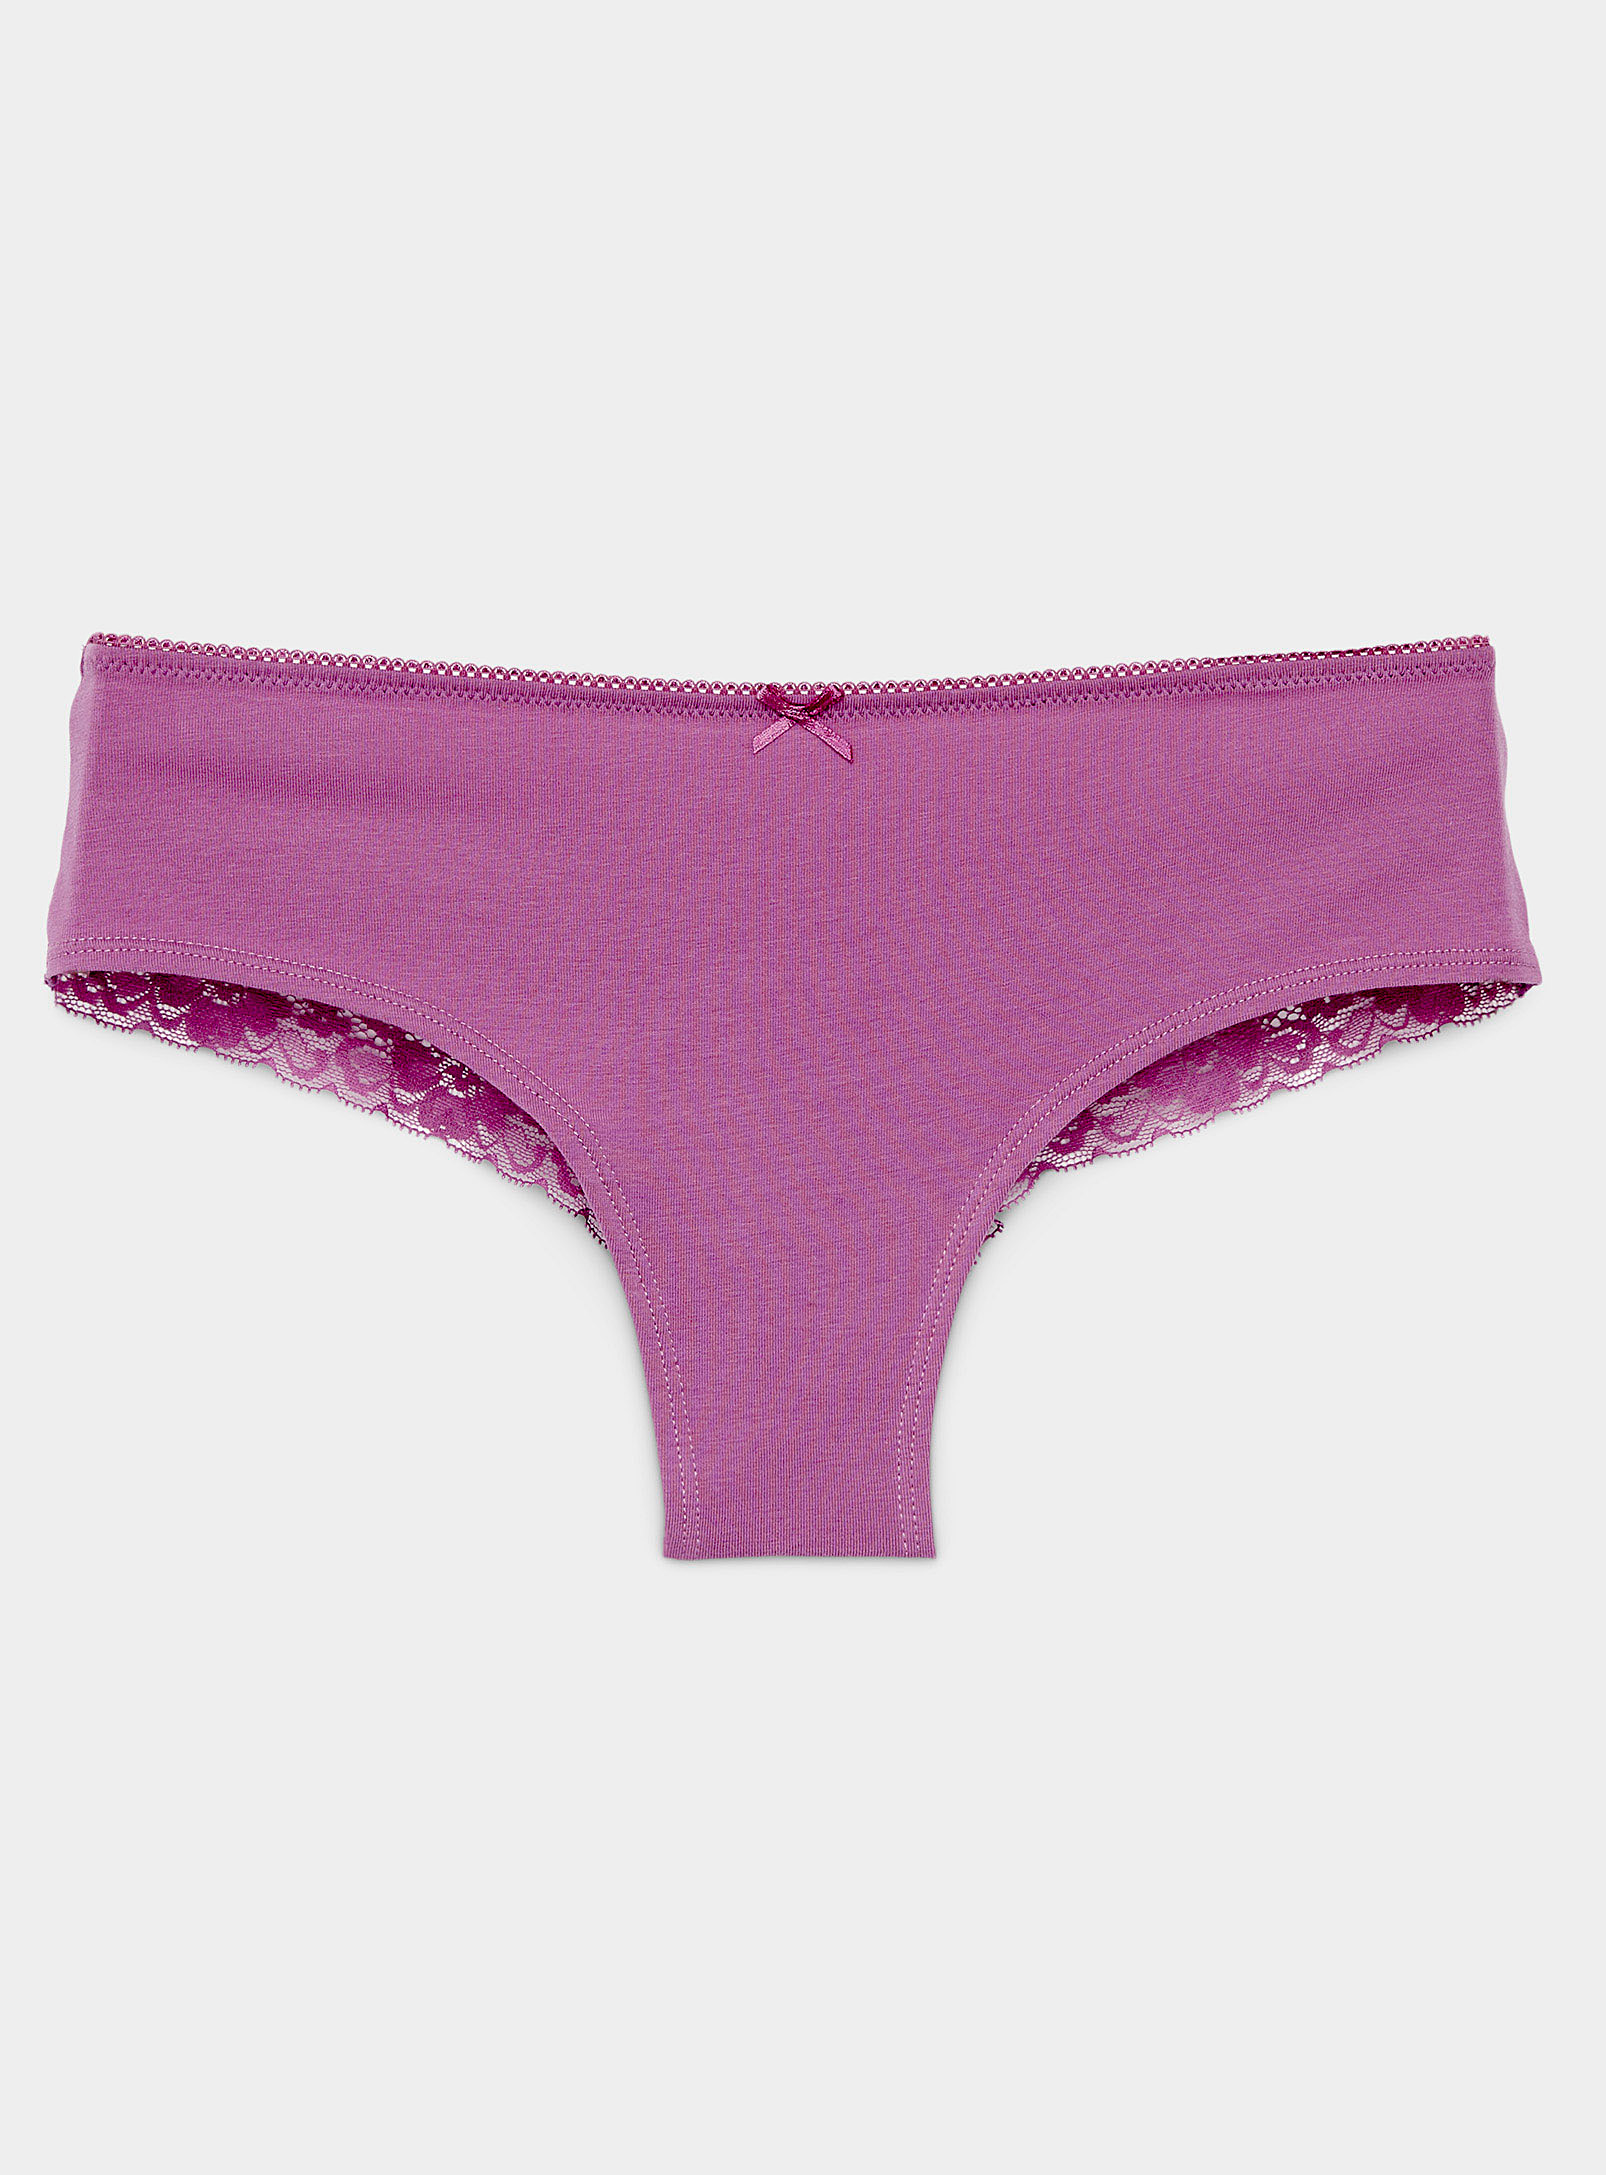 Miiyu Lace Band Cotton Brazilian Panty In Pink